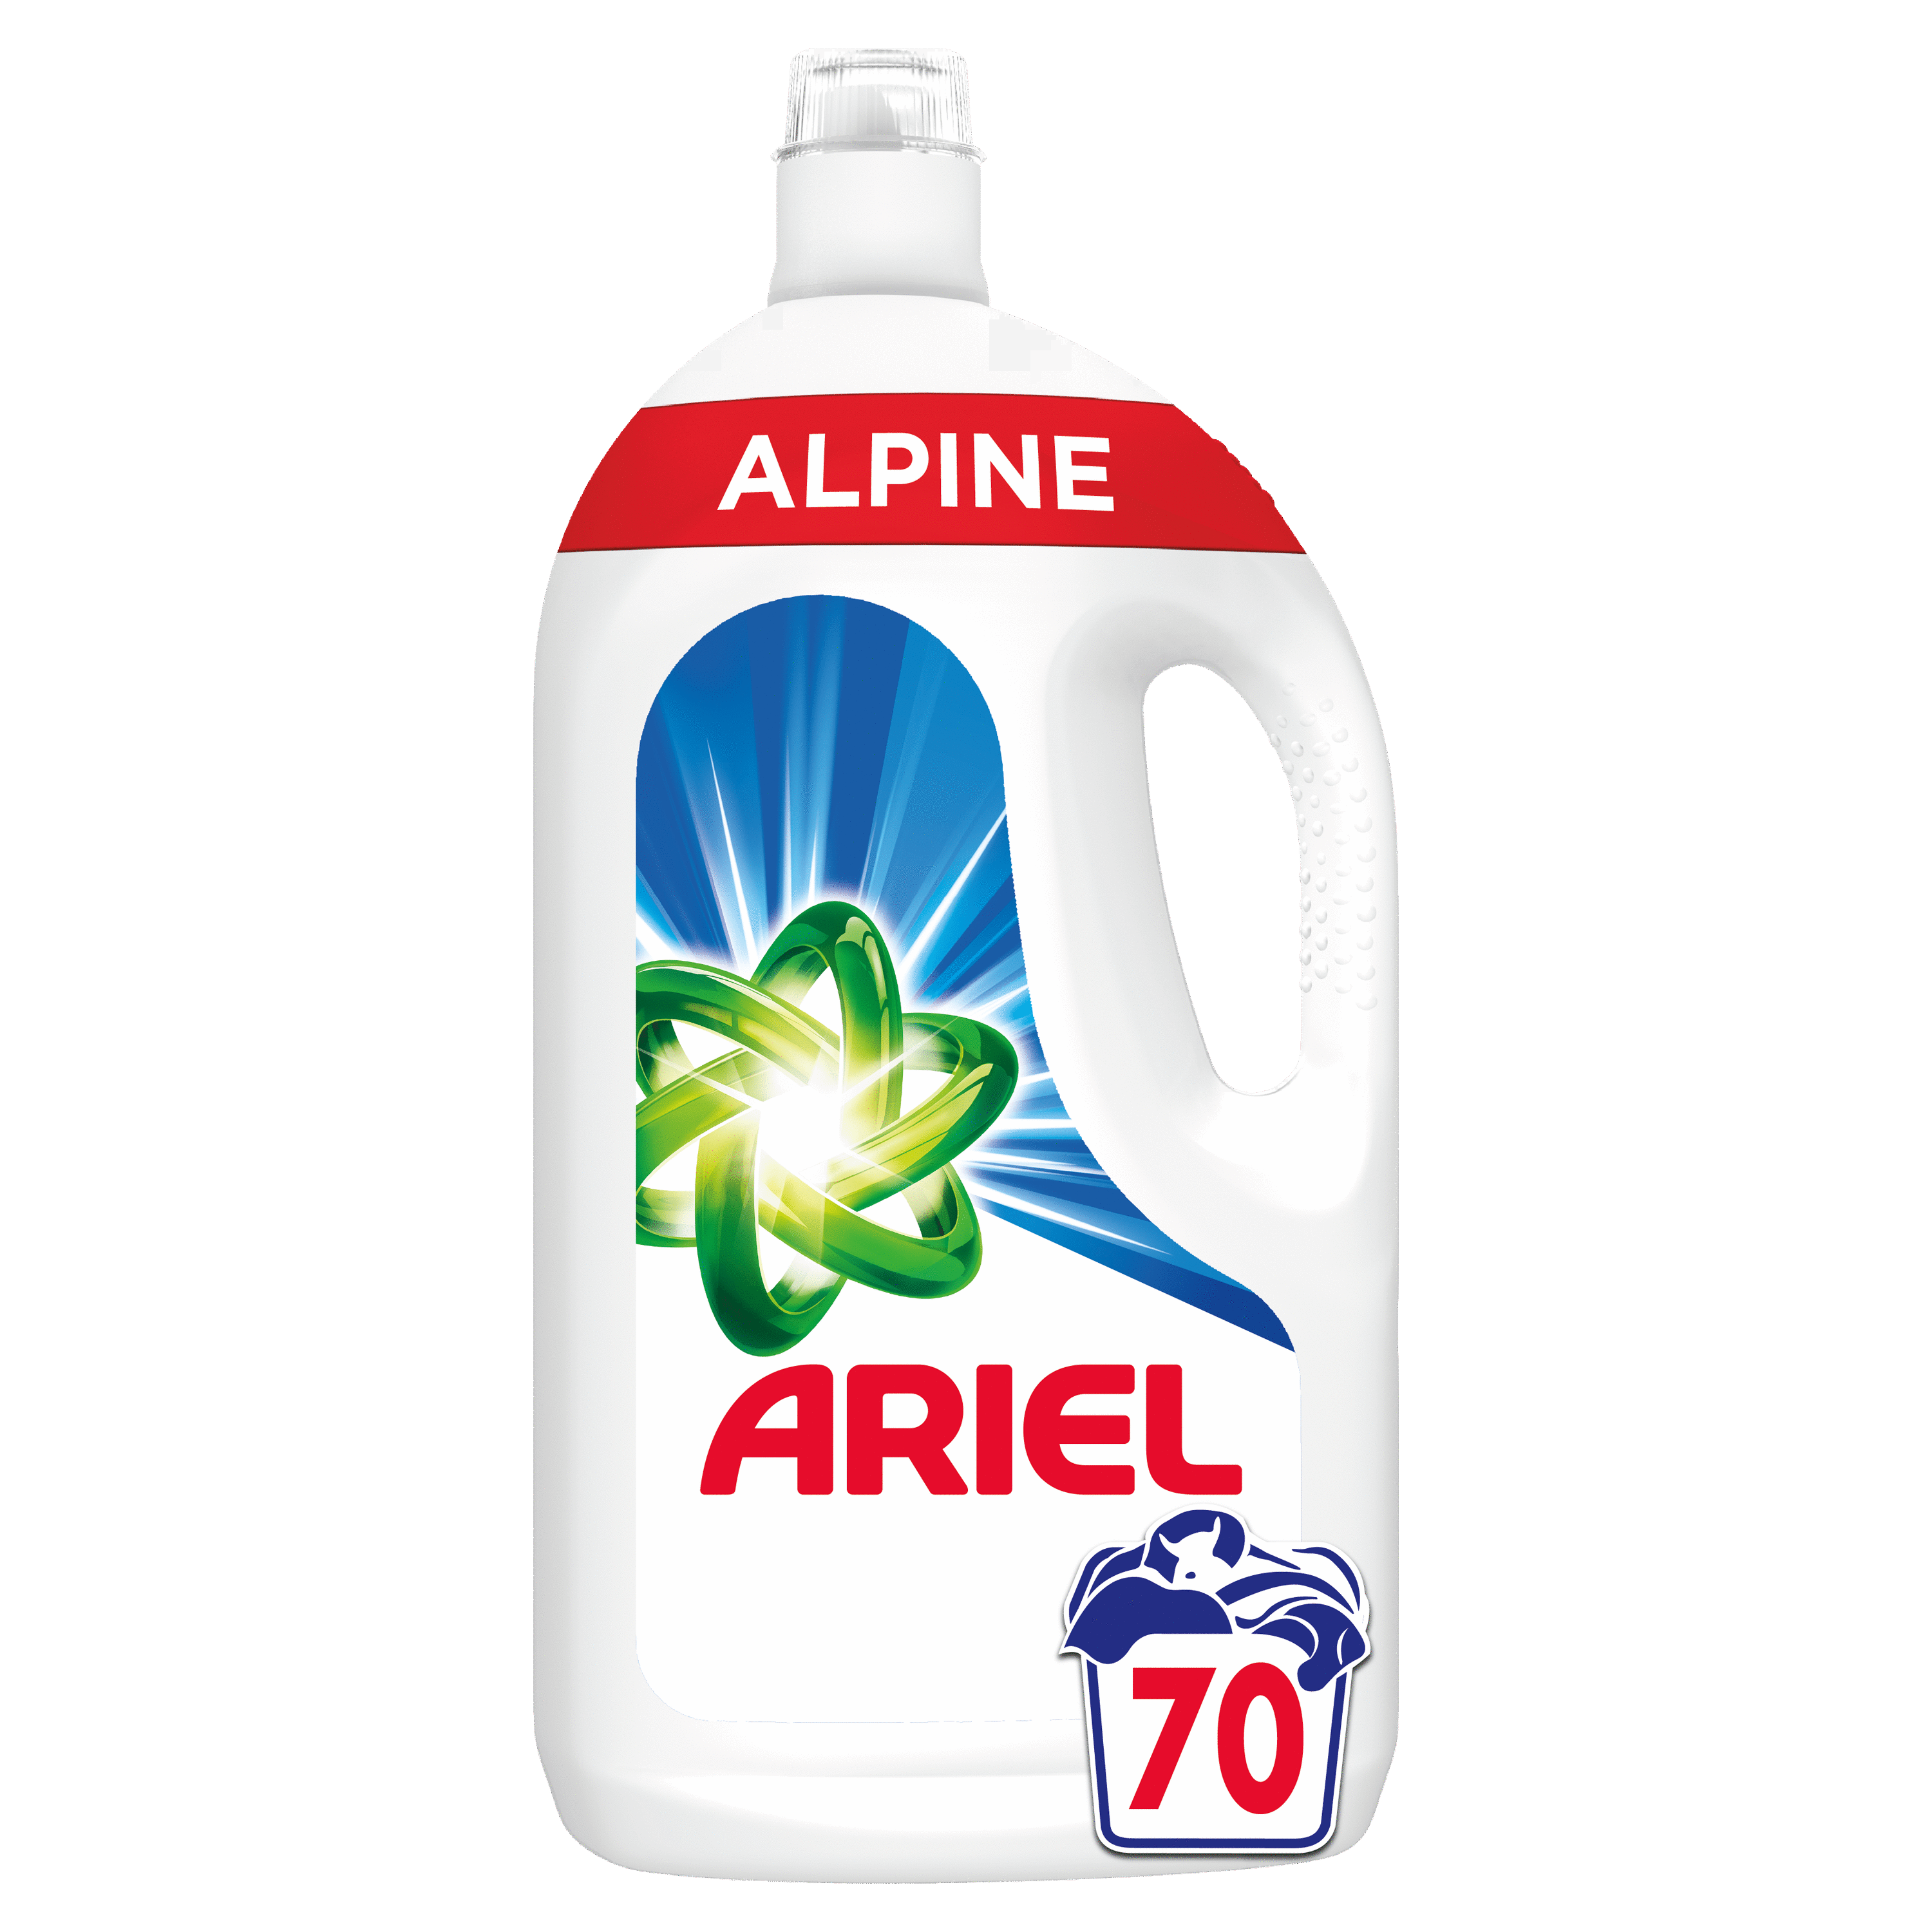 ARIEL Boîte plastique de 27 doses de lessive liquide 765g parfum alpine